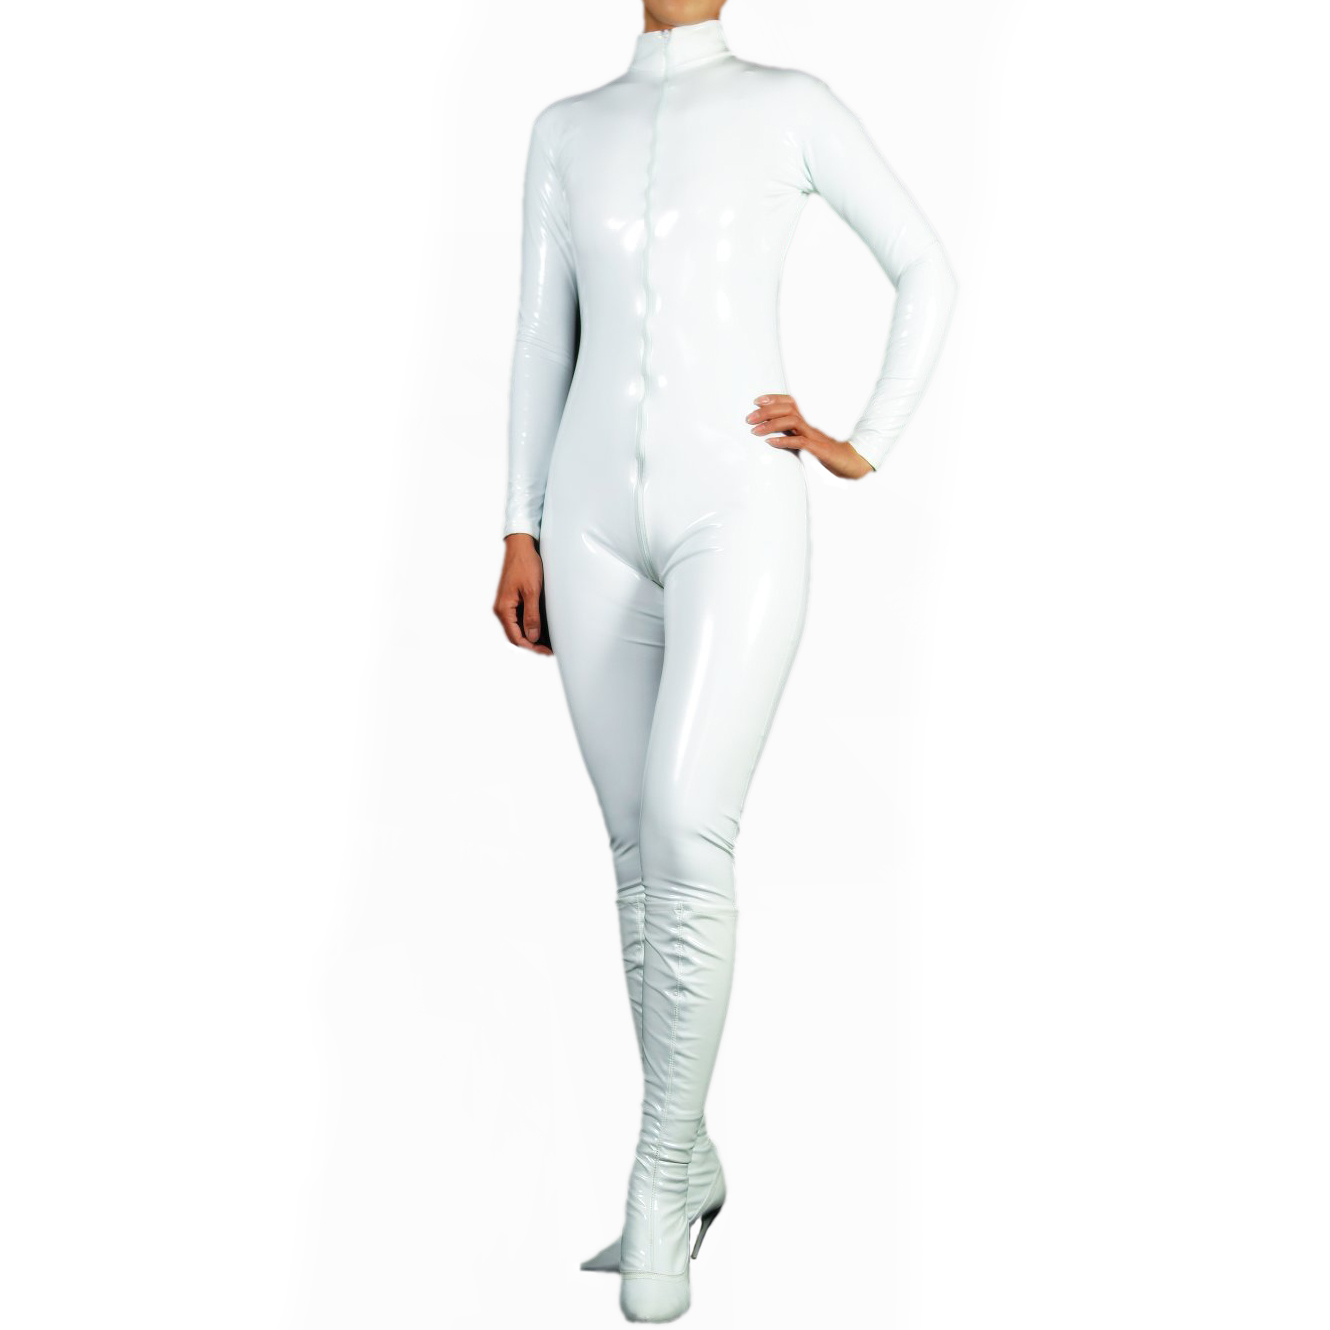 Women's Jumpsuit-styled White PVC Front Zipper Catsuit (M43)